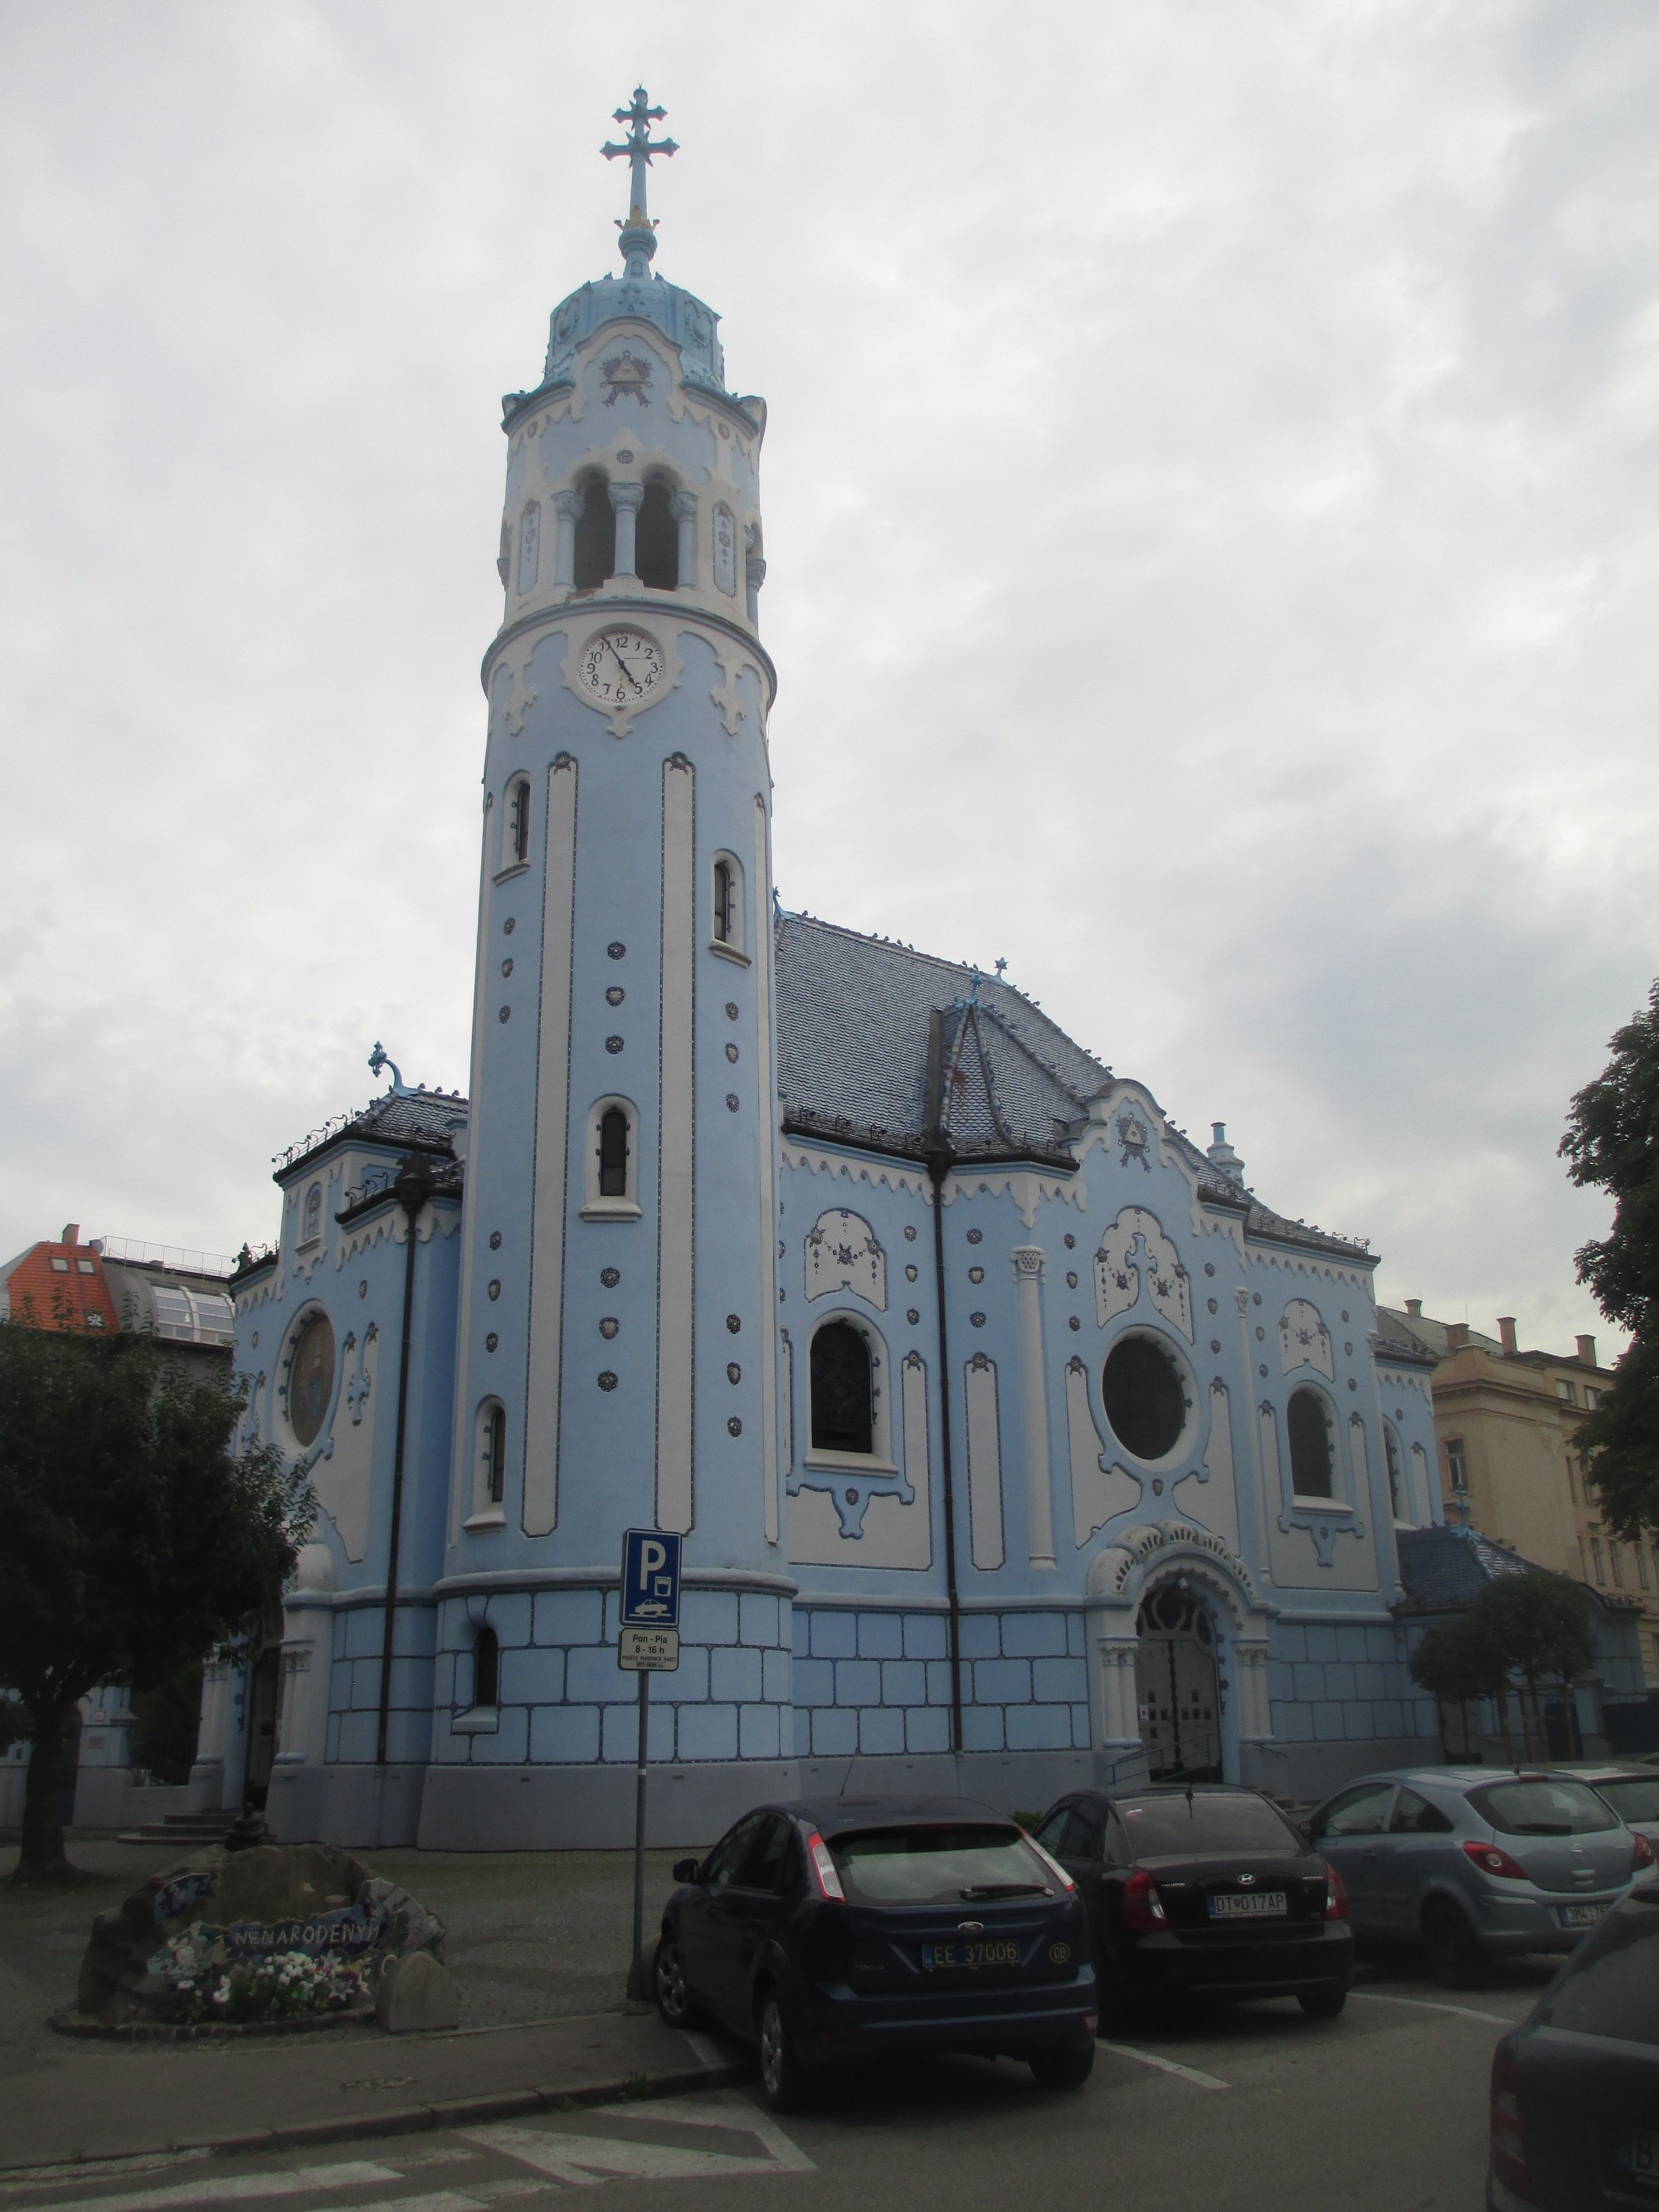 Братислава. Синий костел (Костел Святой Эльжбеты). (16.09.2014)